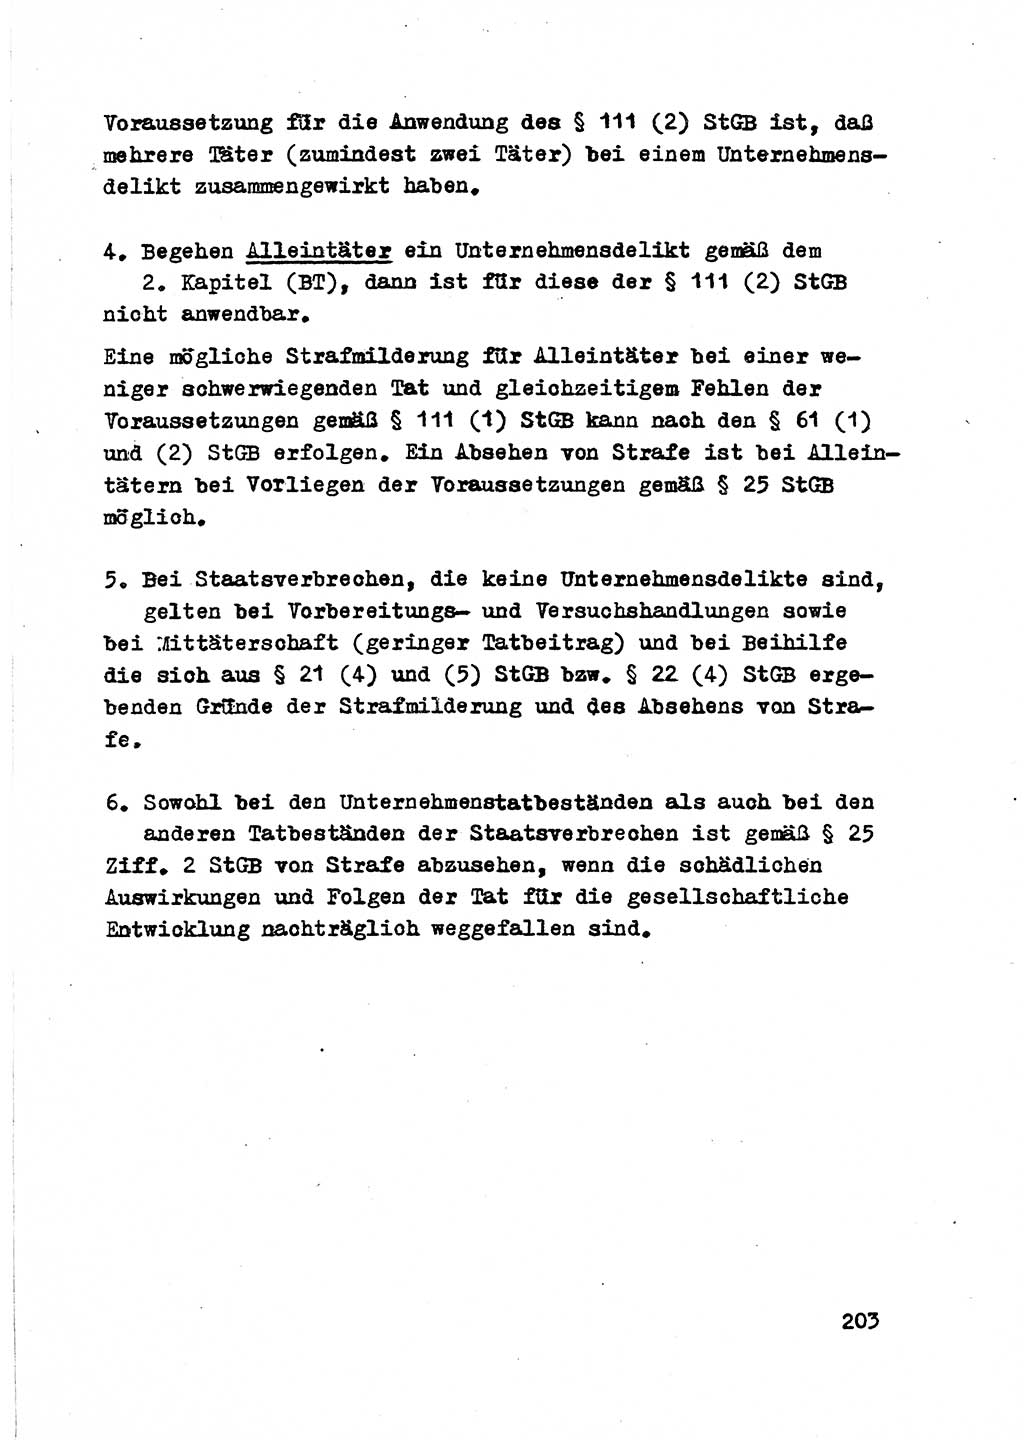 Strafrecht der DDR (Deutsche Demokratische Republik), Besonderer Teil, Lehrmaterial, Heft 2 1969, Seite 203 (Strafr. DDR BT Lehrmat. H. 2 1969, S. 203)